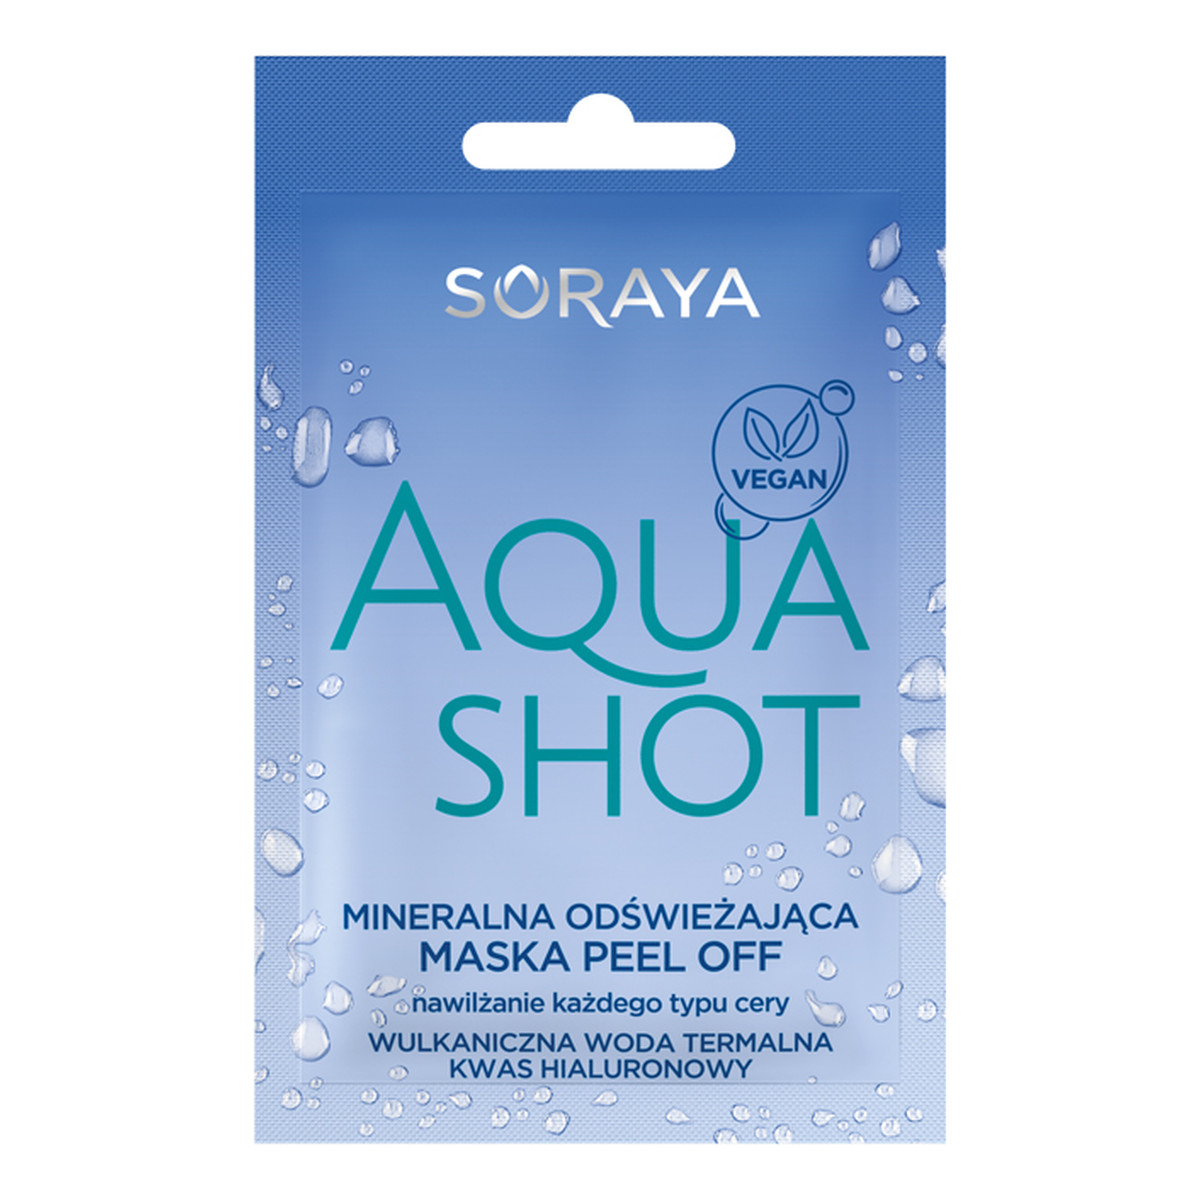 Soraya Aqua Shot Mineralna Odświeżająca Maska Peel-off 6g